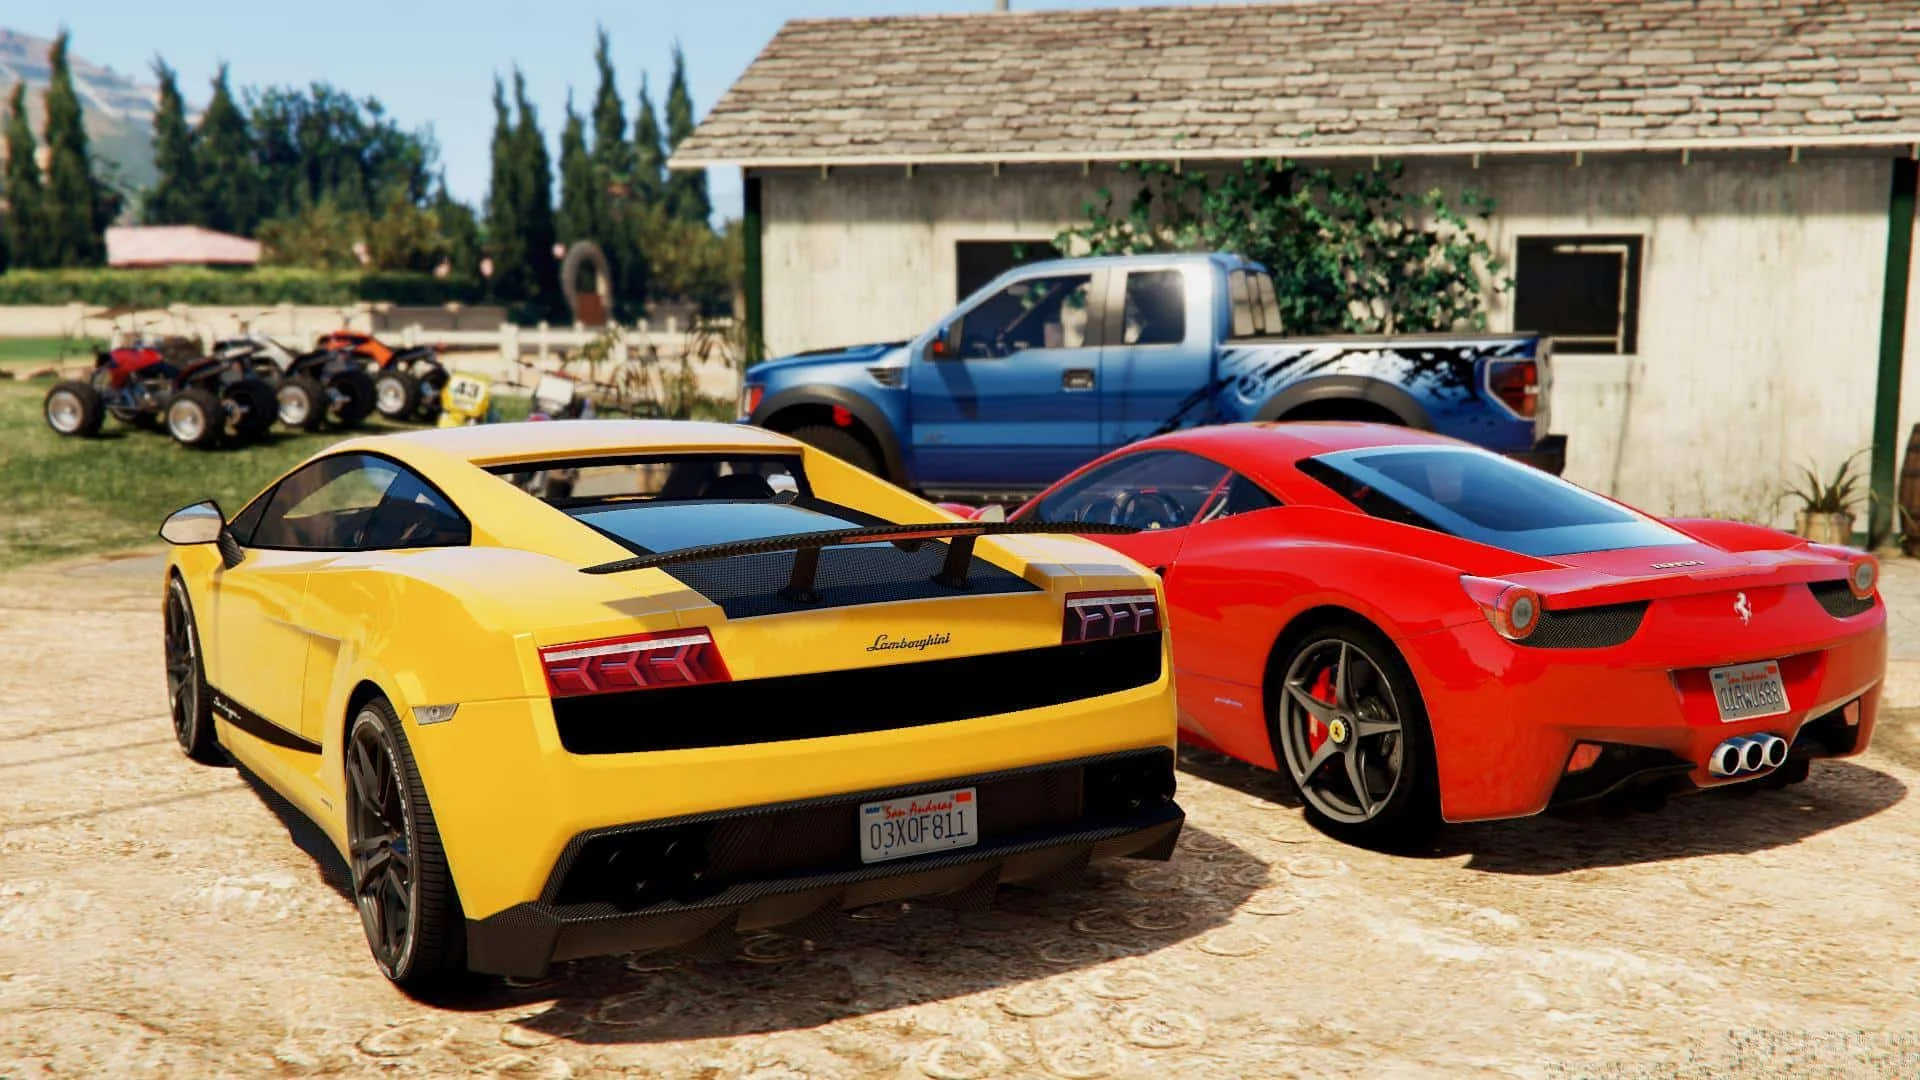 Автомобили — не просто неотъемлемая часть Grand Theft Auto с самой первой части — это буквально душа и сердце серии. И хотя все машины в GTA всегда носят выдуманные имена, давно известно, что «списаны» они с реальных прототипов. С каких? Об этом в материале и расскажем — для примера мы выбрали самые красивые на наш взгляд автомобили из GTA 5, последней на сегодня части серии.